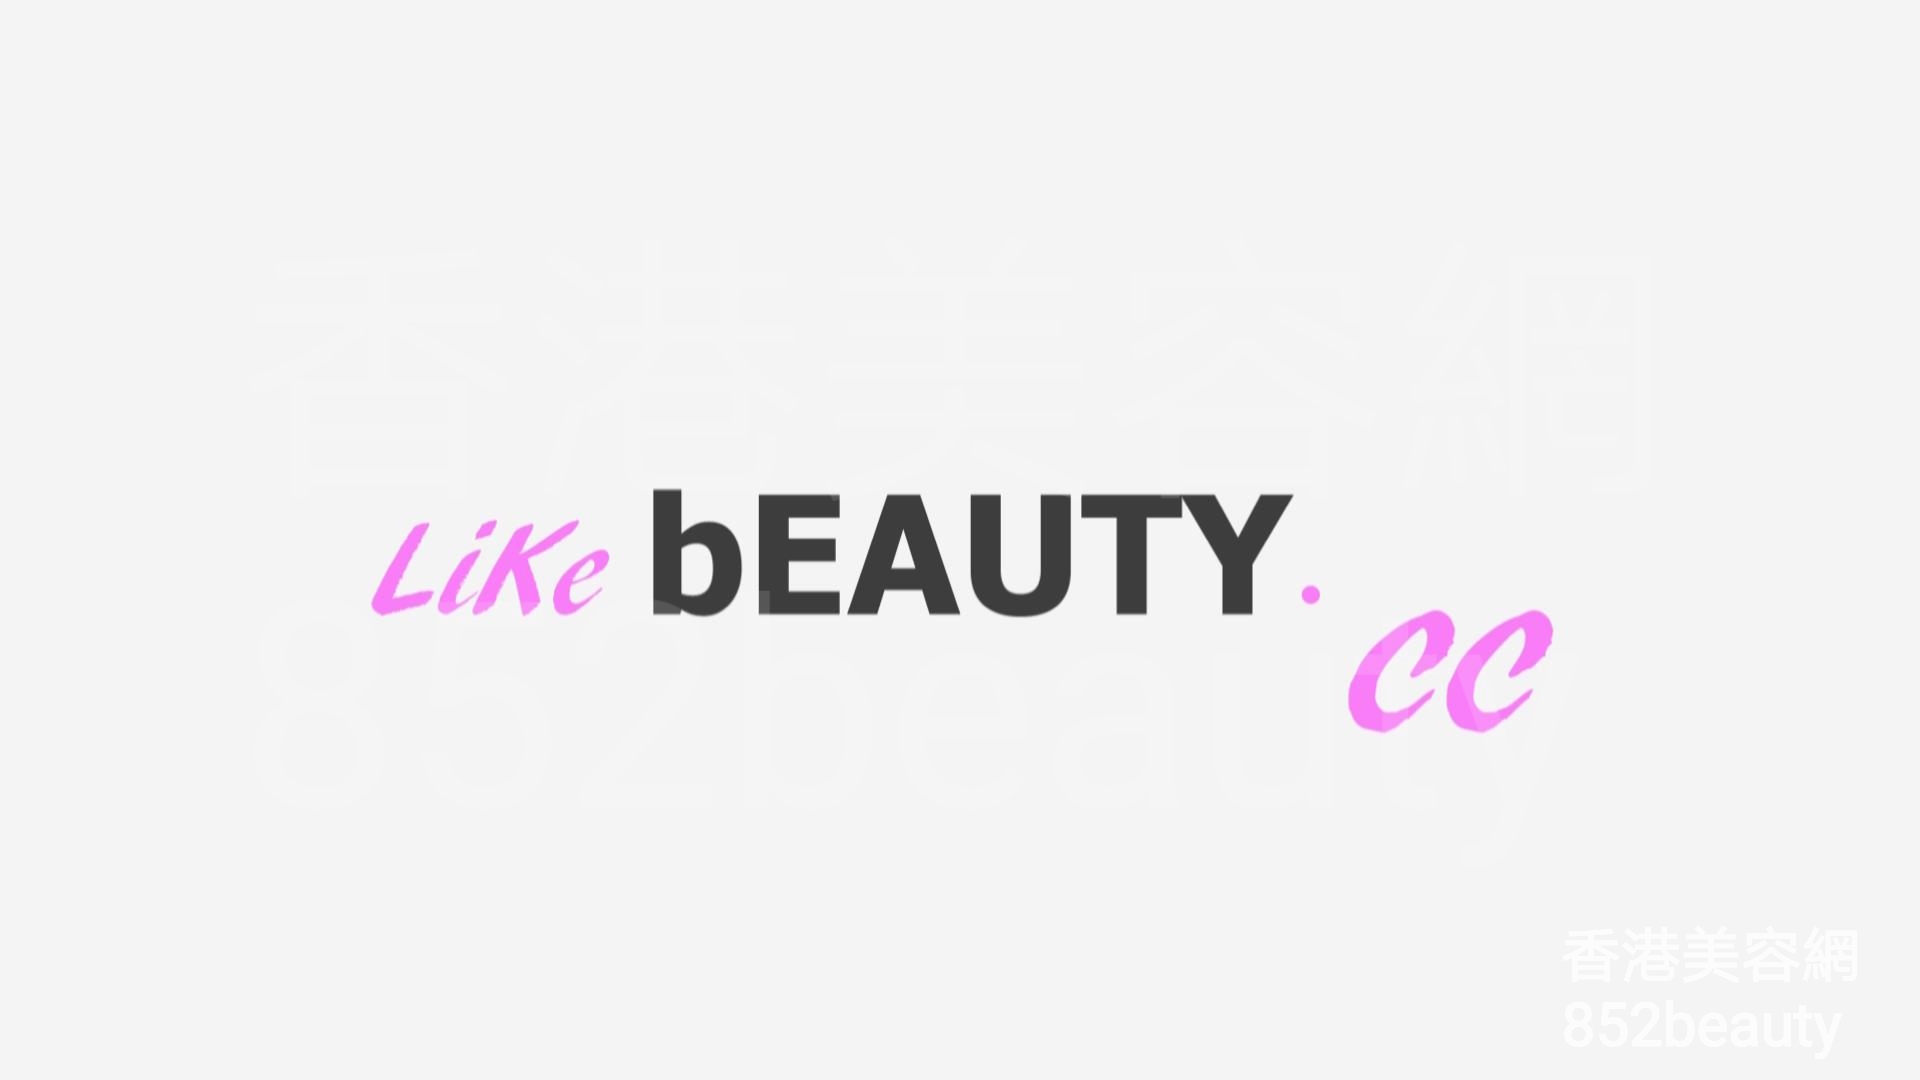 美容院 Beauty Salon: Like Beauty (光榮結業)